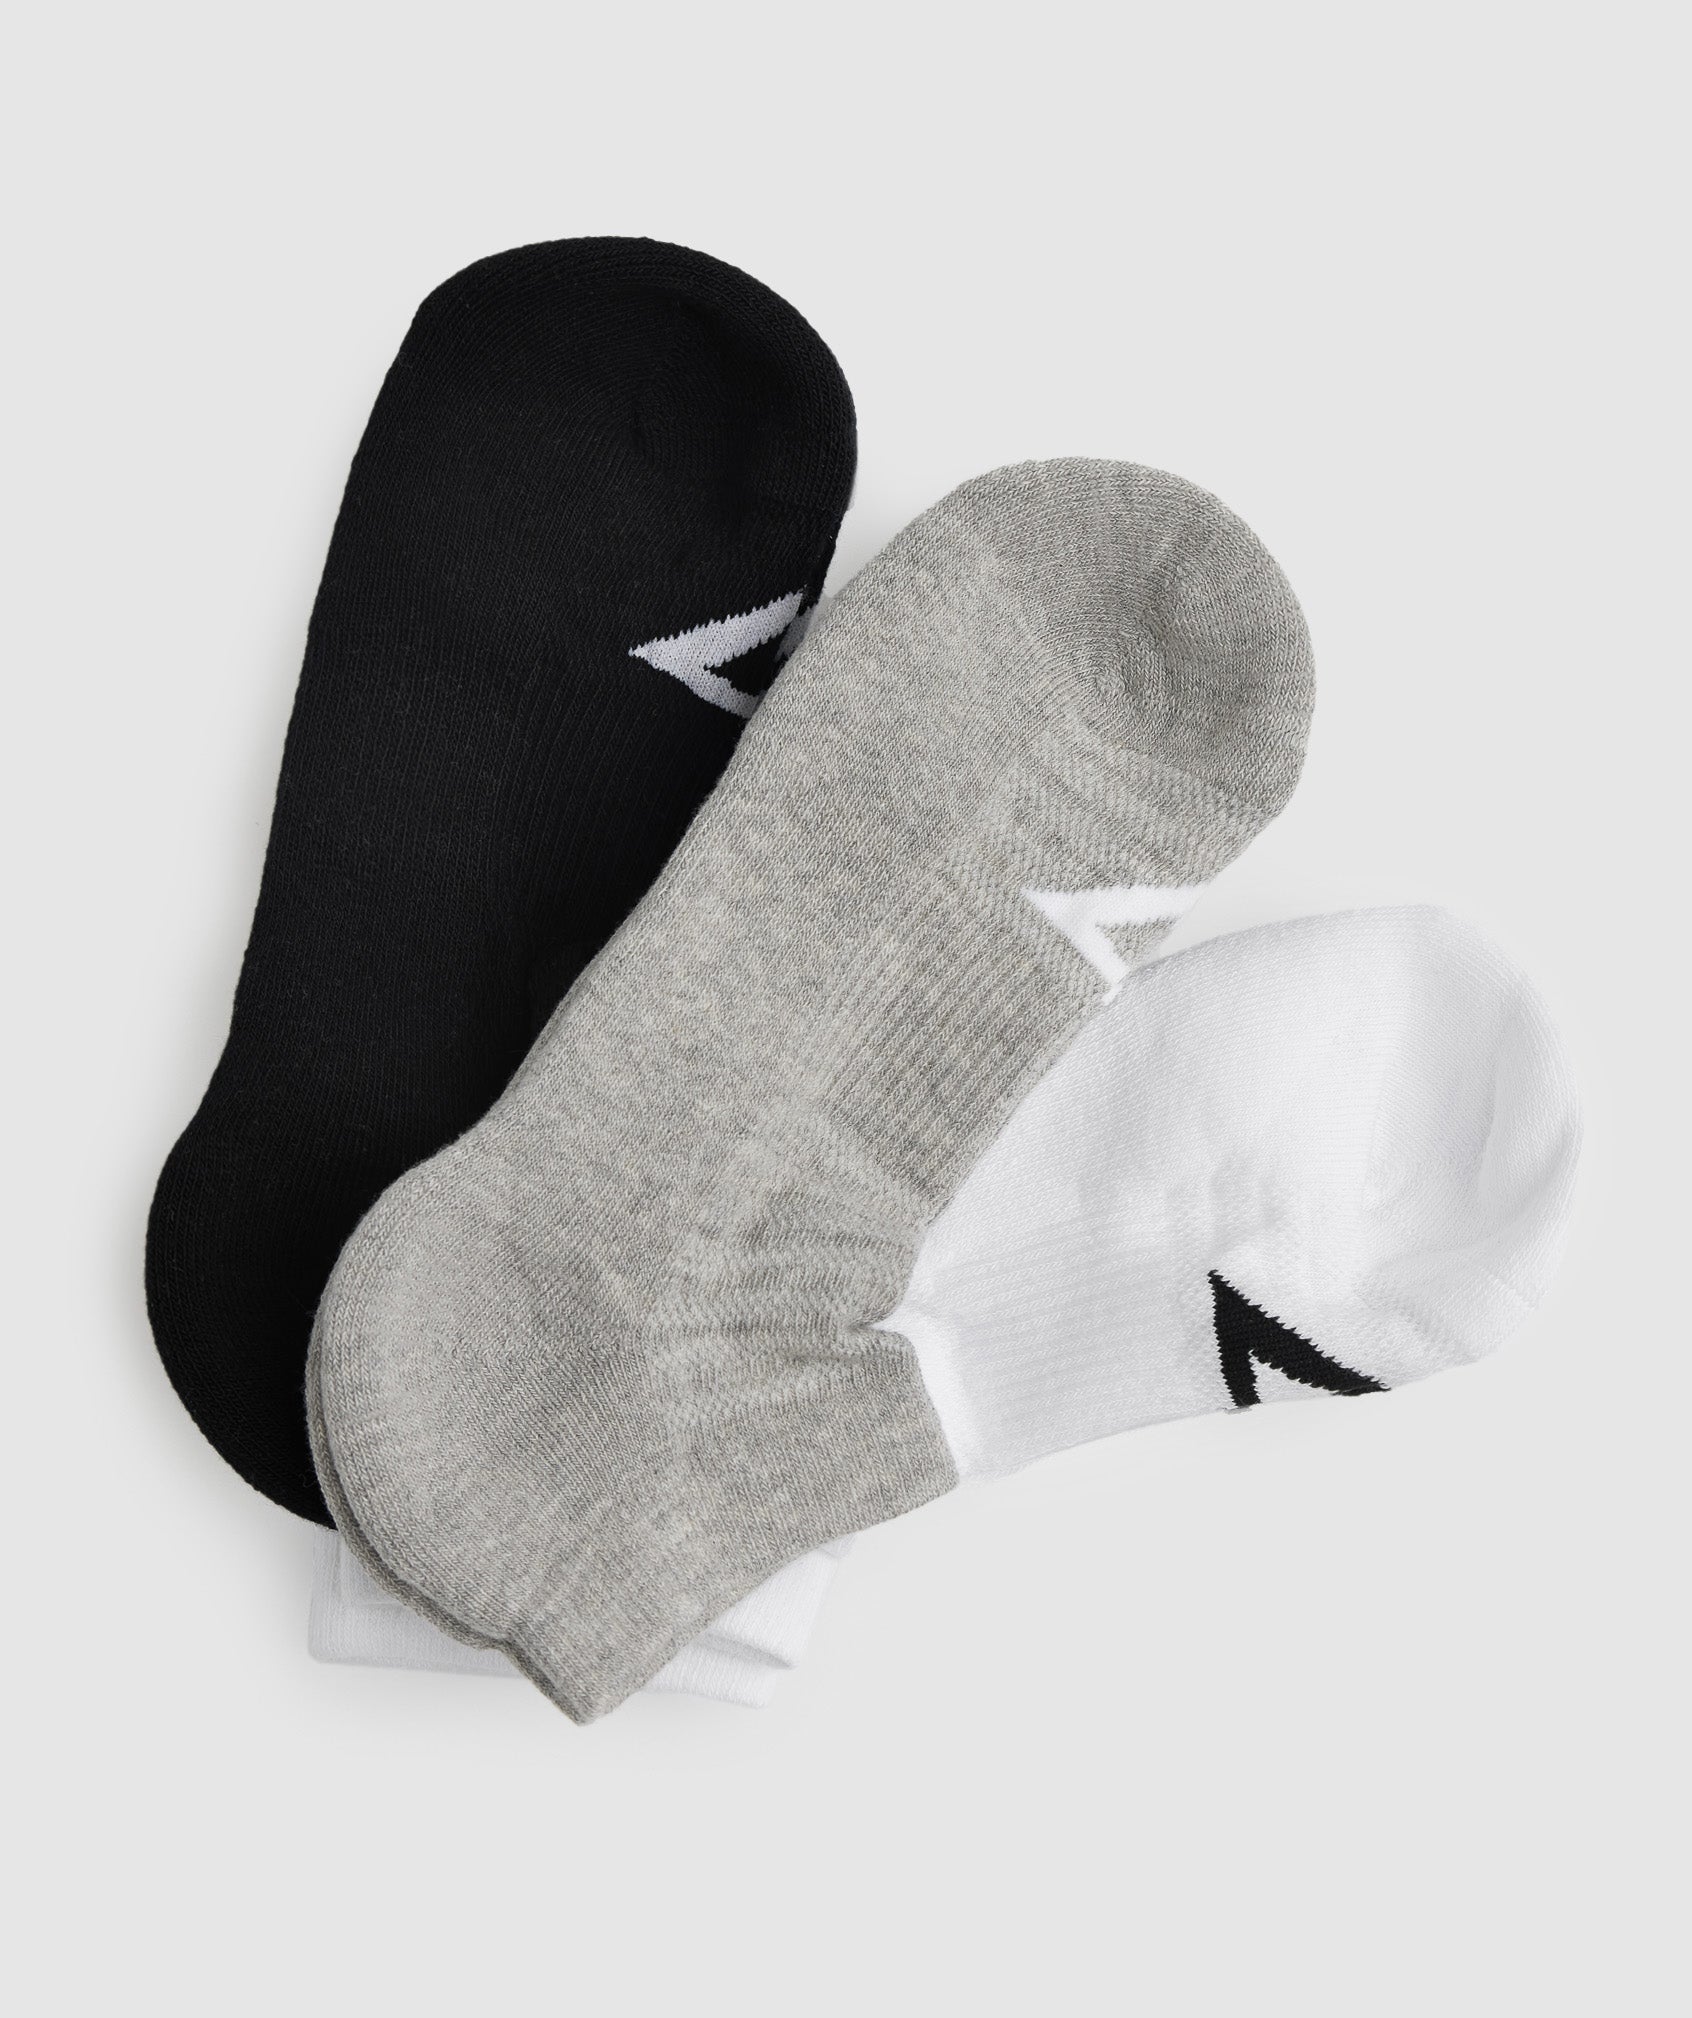 Trainer Socks 3pk in White/Light Grey Marl/Black - view 2